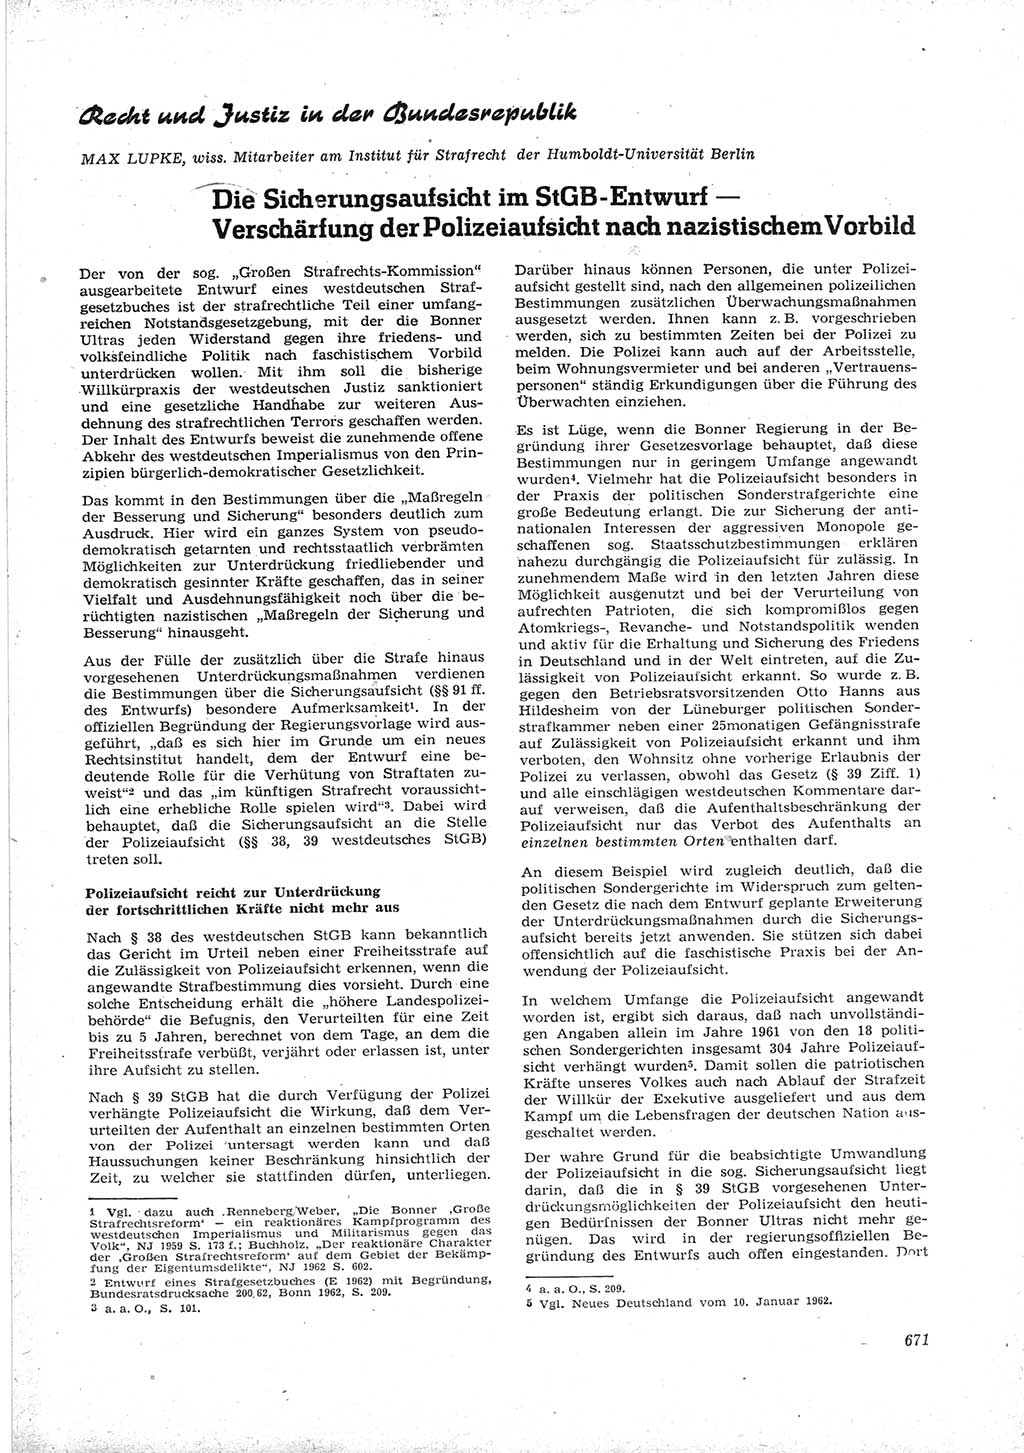 Neue Justiz (NJ), Zeitschrift für Recht und Rechtswissenschaft [Deutsche Demokratische Republik (DDR)], 16. Jahrgang 1962, Seite 671 (NJ DDR 1962, S. 671)